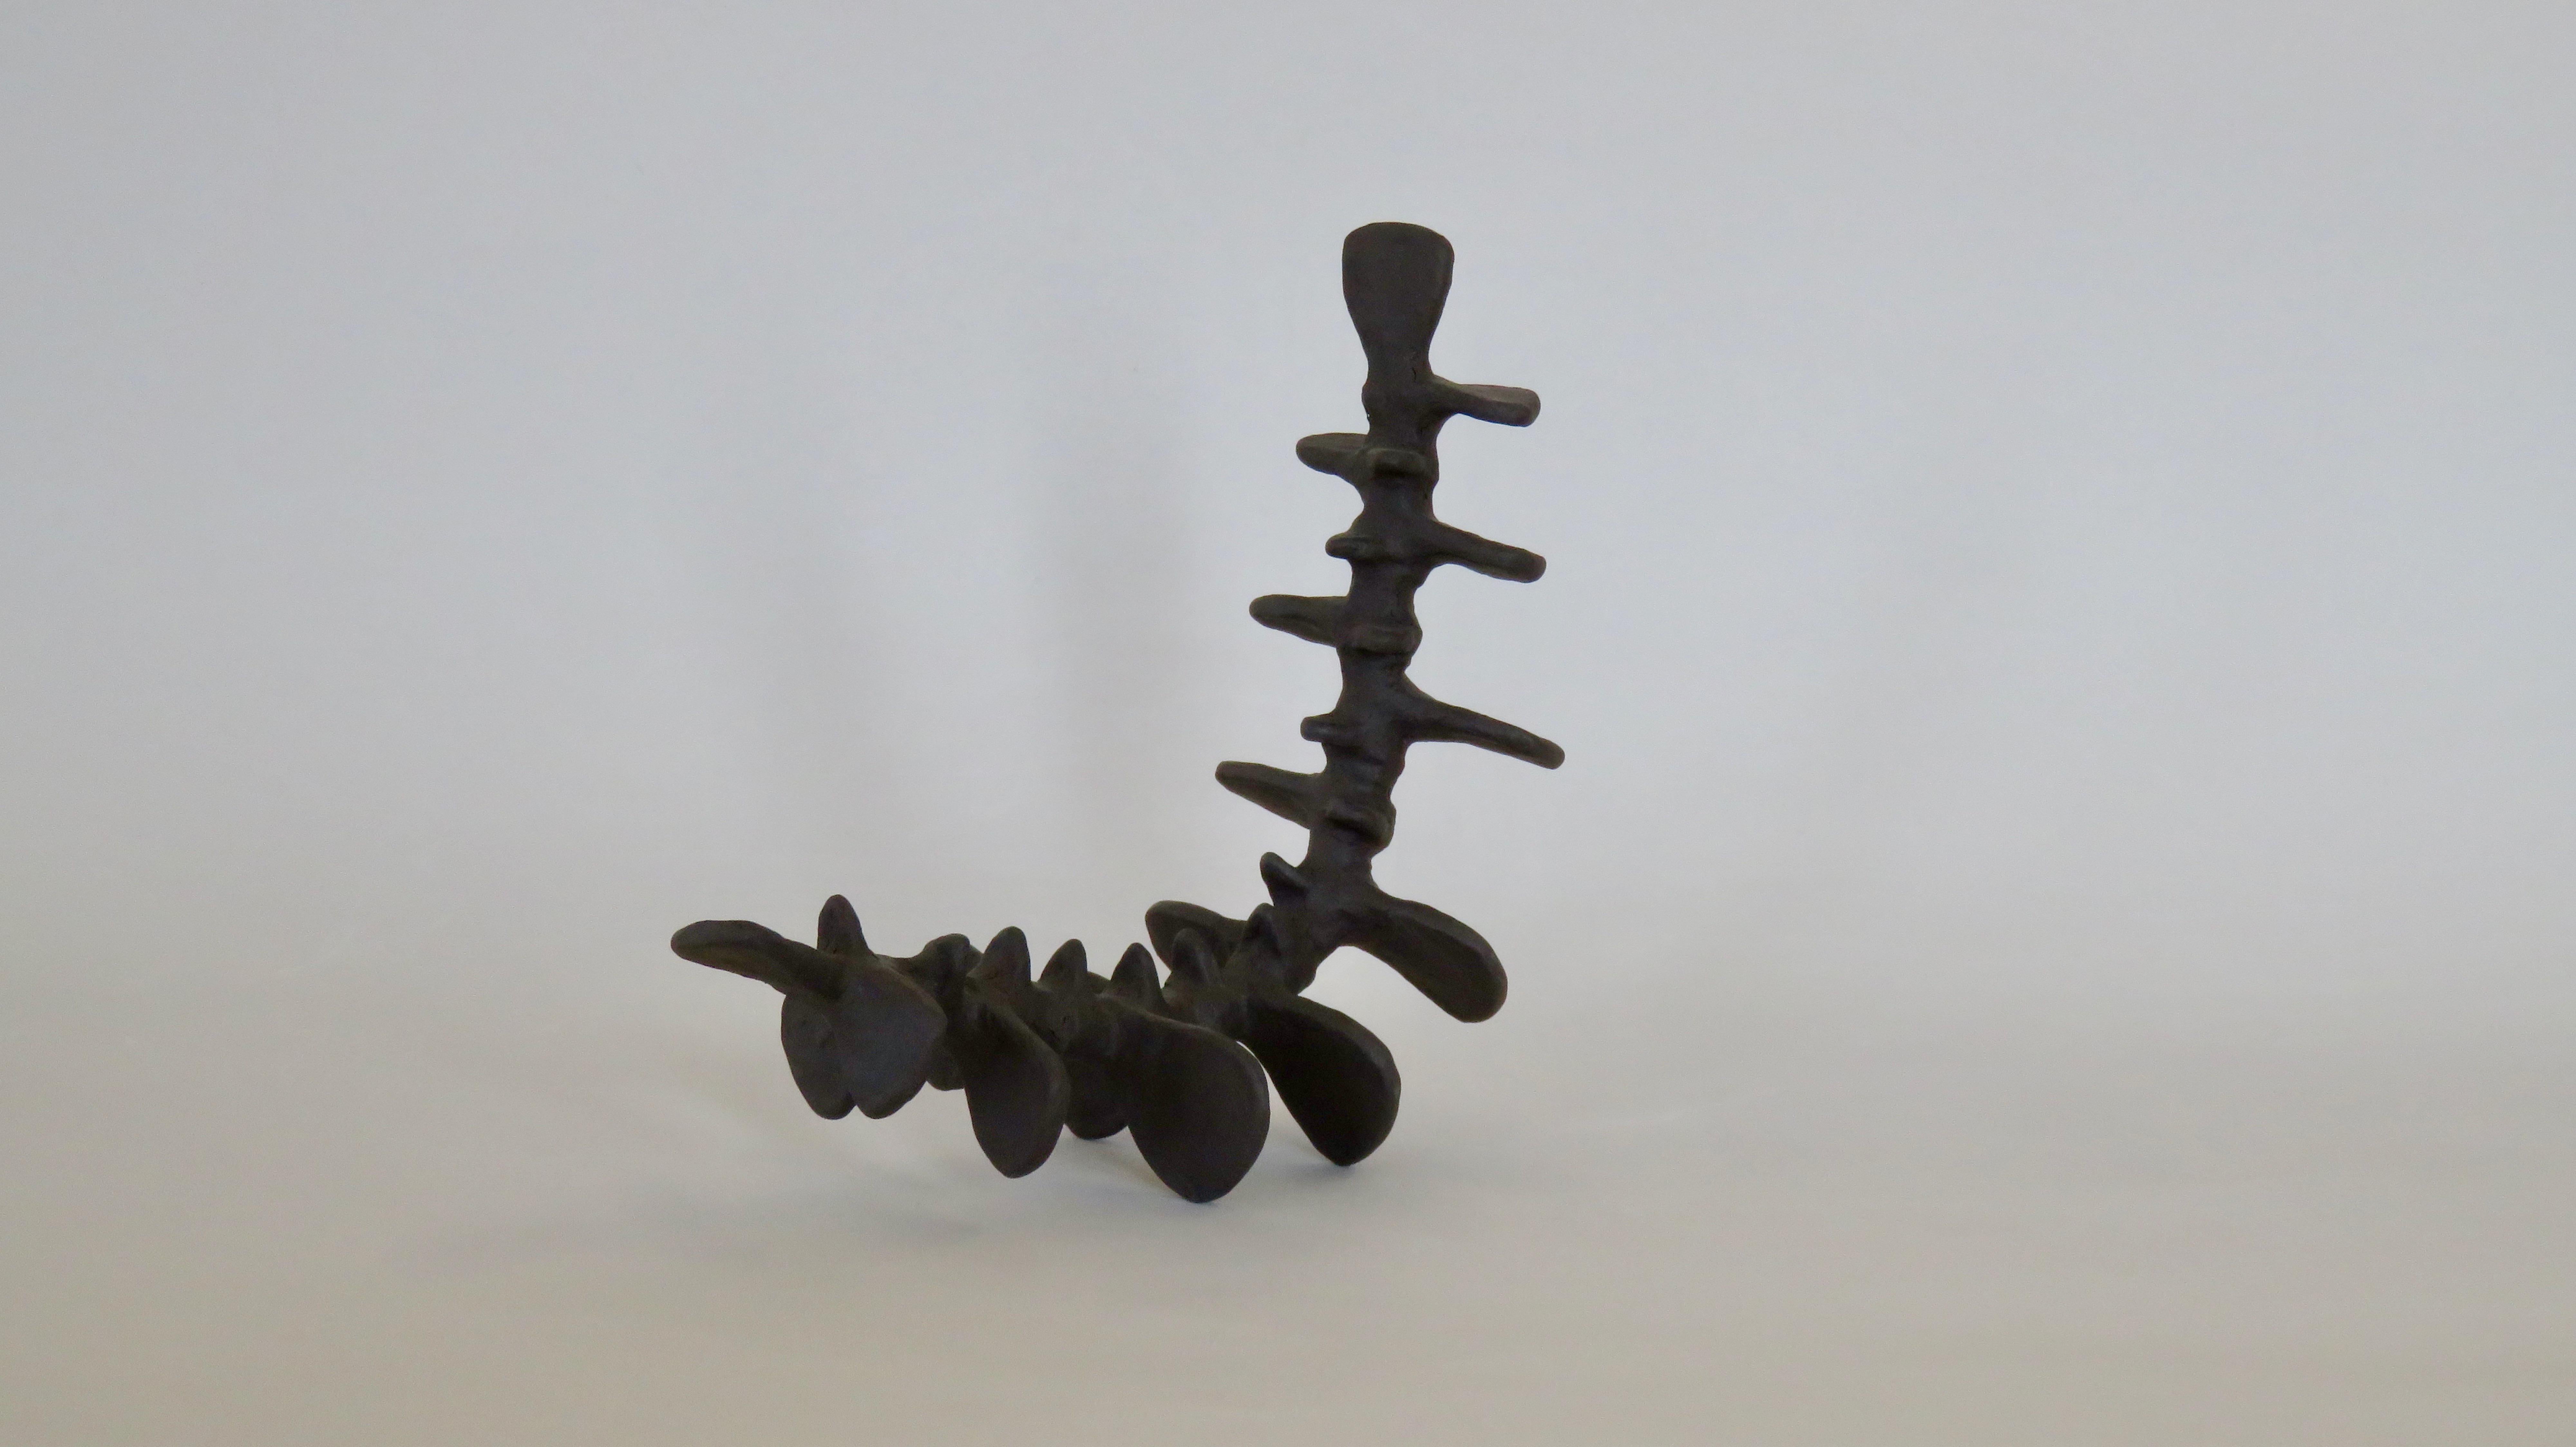 Deep Brown Spine-Like Ceramic Sculpture in Brown Stoneware, Hand Built (21. Jahrhundert und zeitgenössisch)